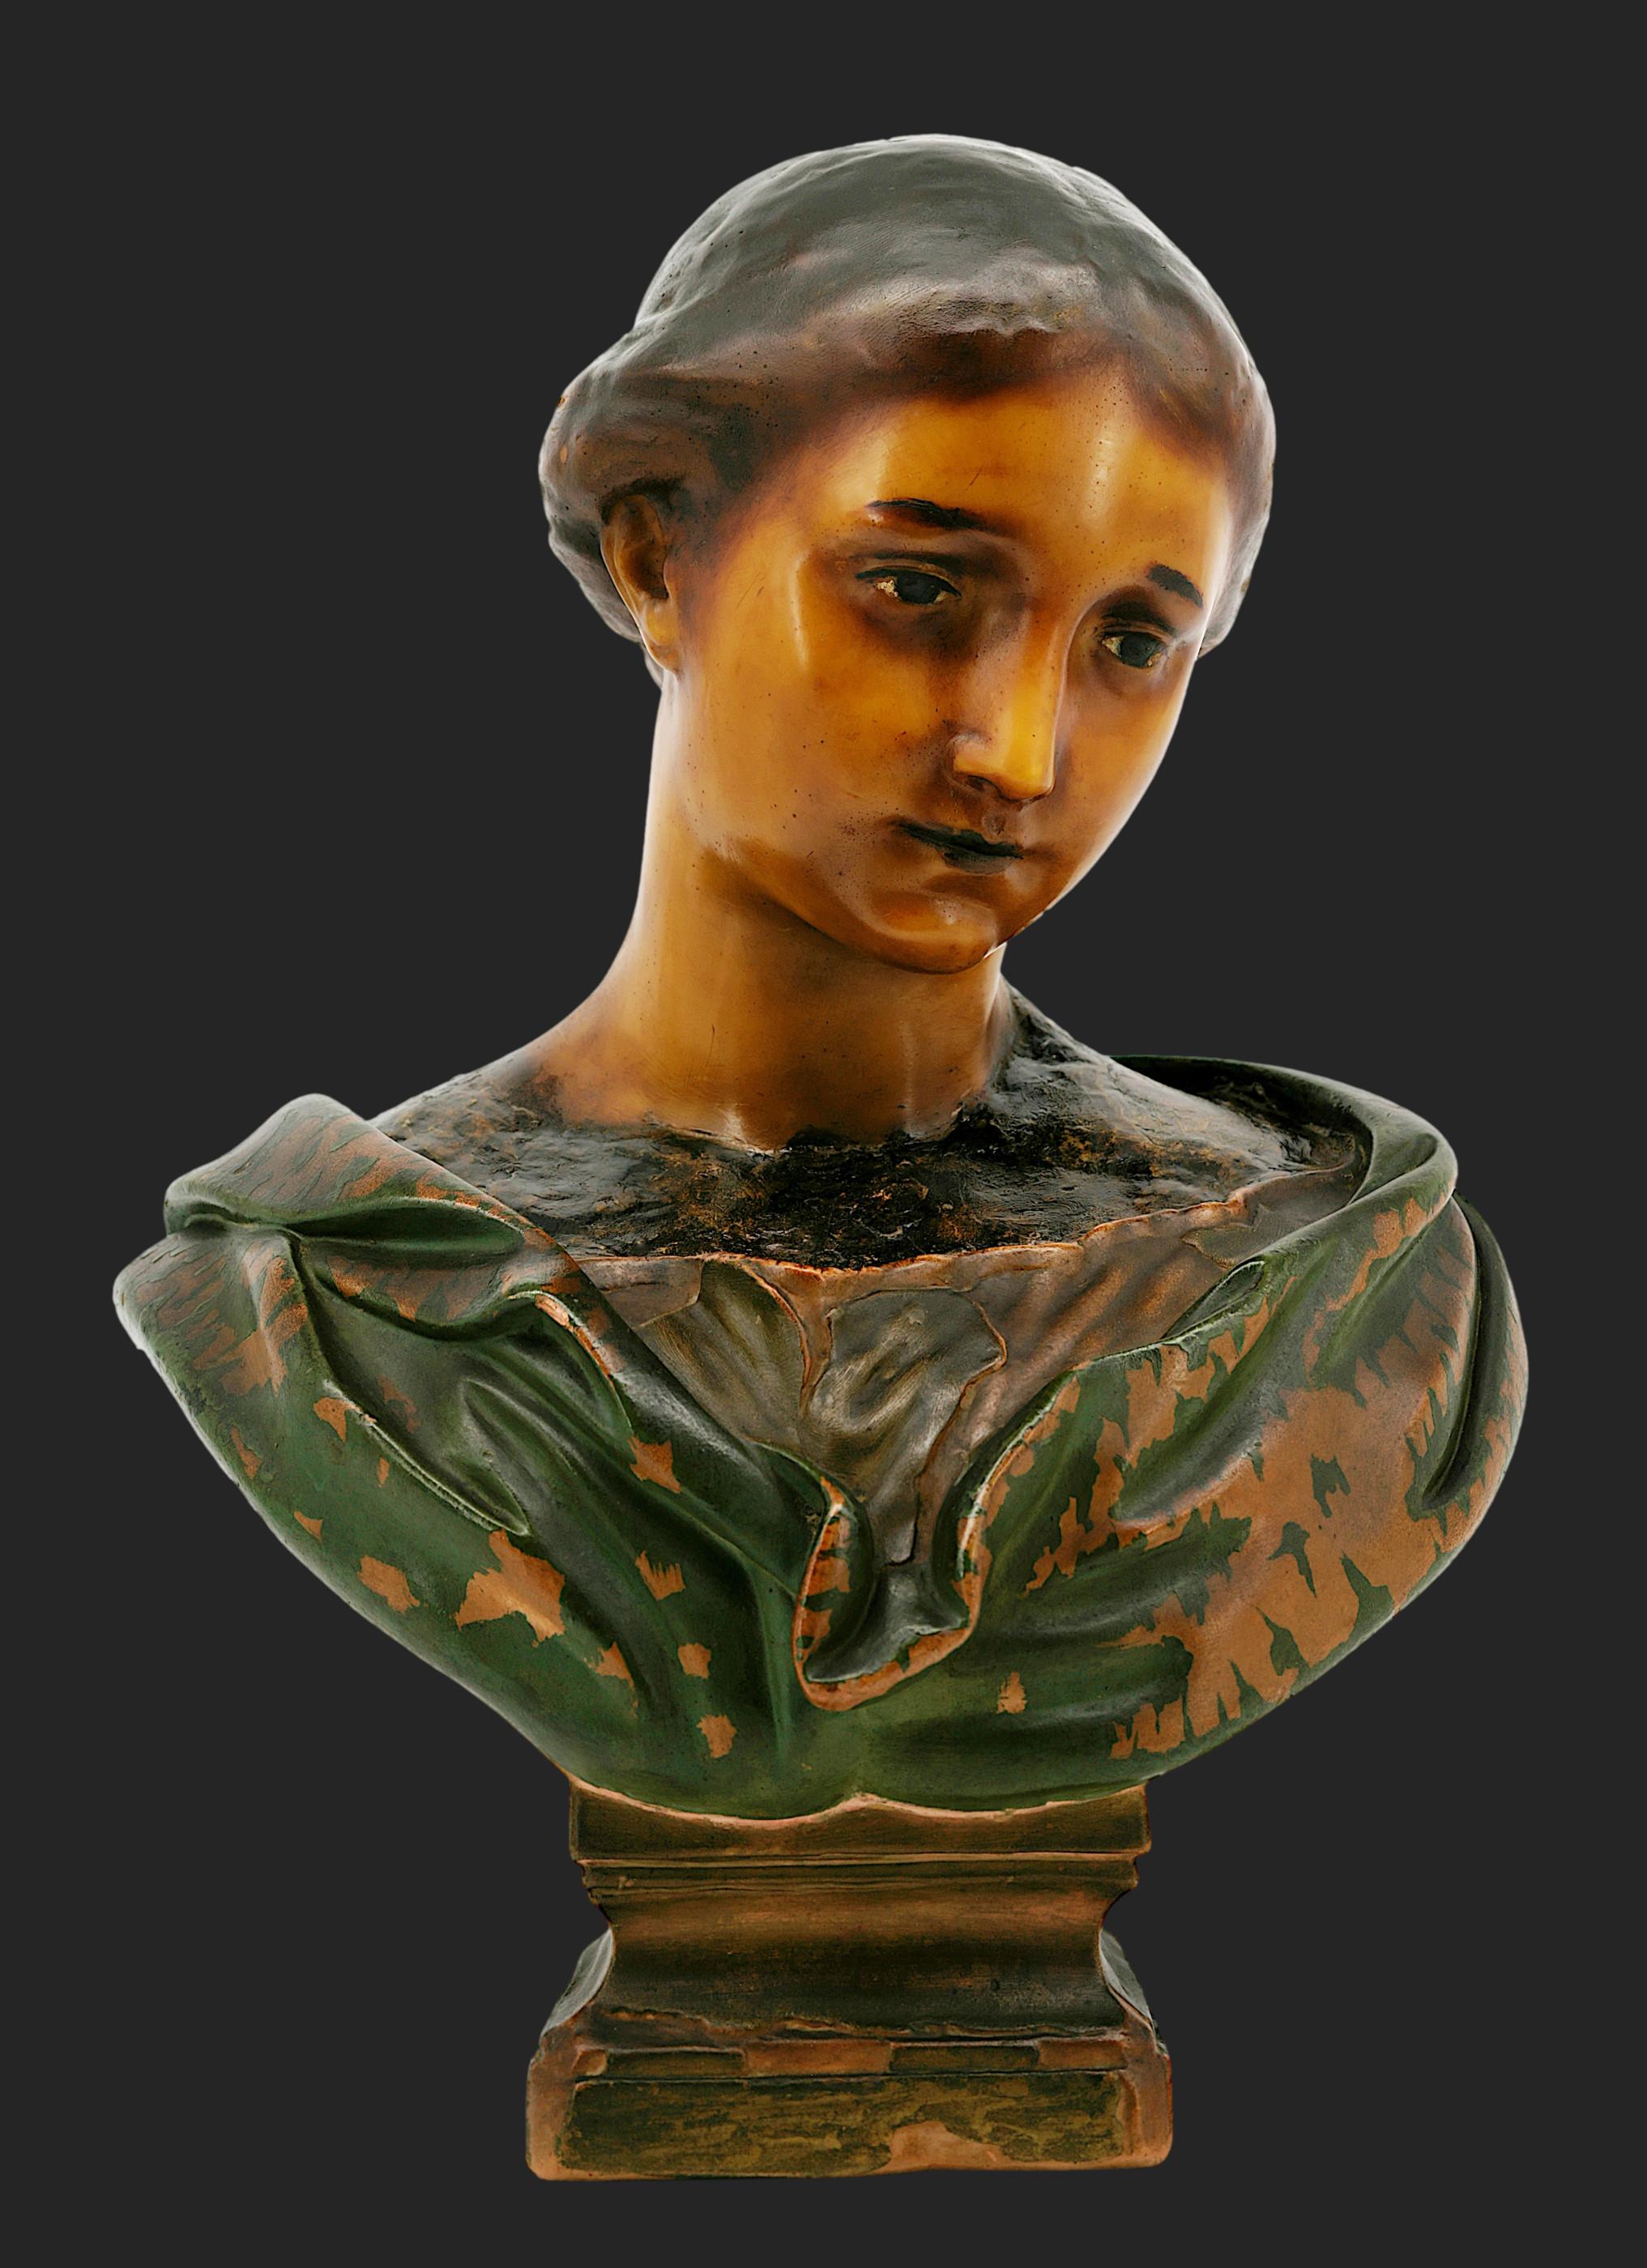 Jeune fille en cire  Sculpture en buste de Mme Arondelle, 2 rue du Louvre, Paris, France, vers 1900. Cire polychrome. D'après la célèbre tête de cire du musée de Lille (France). Hauteur : 45,4 cm (17,9